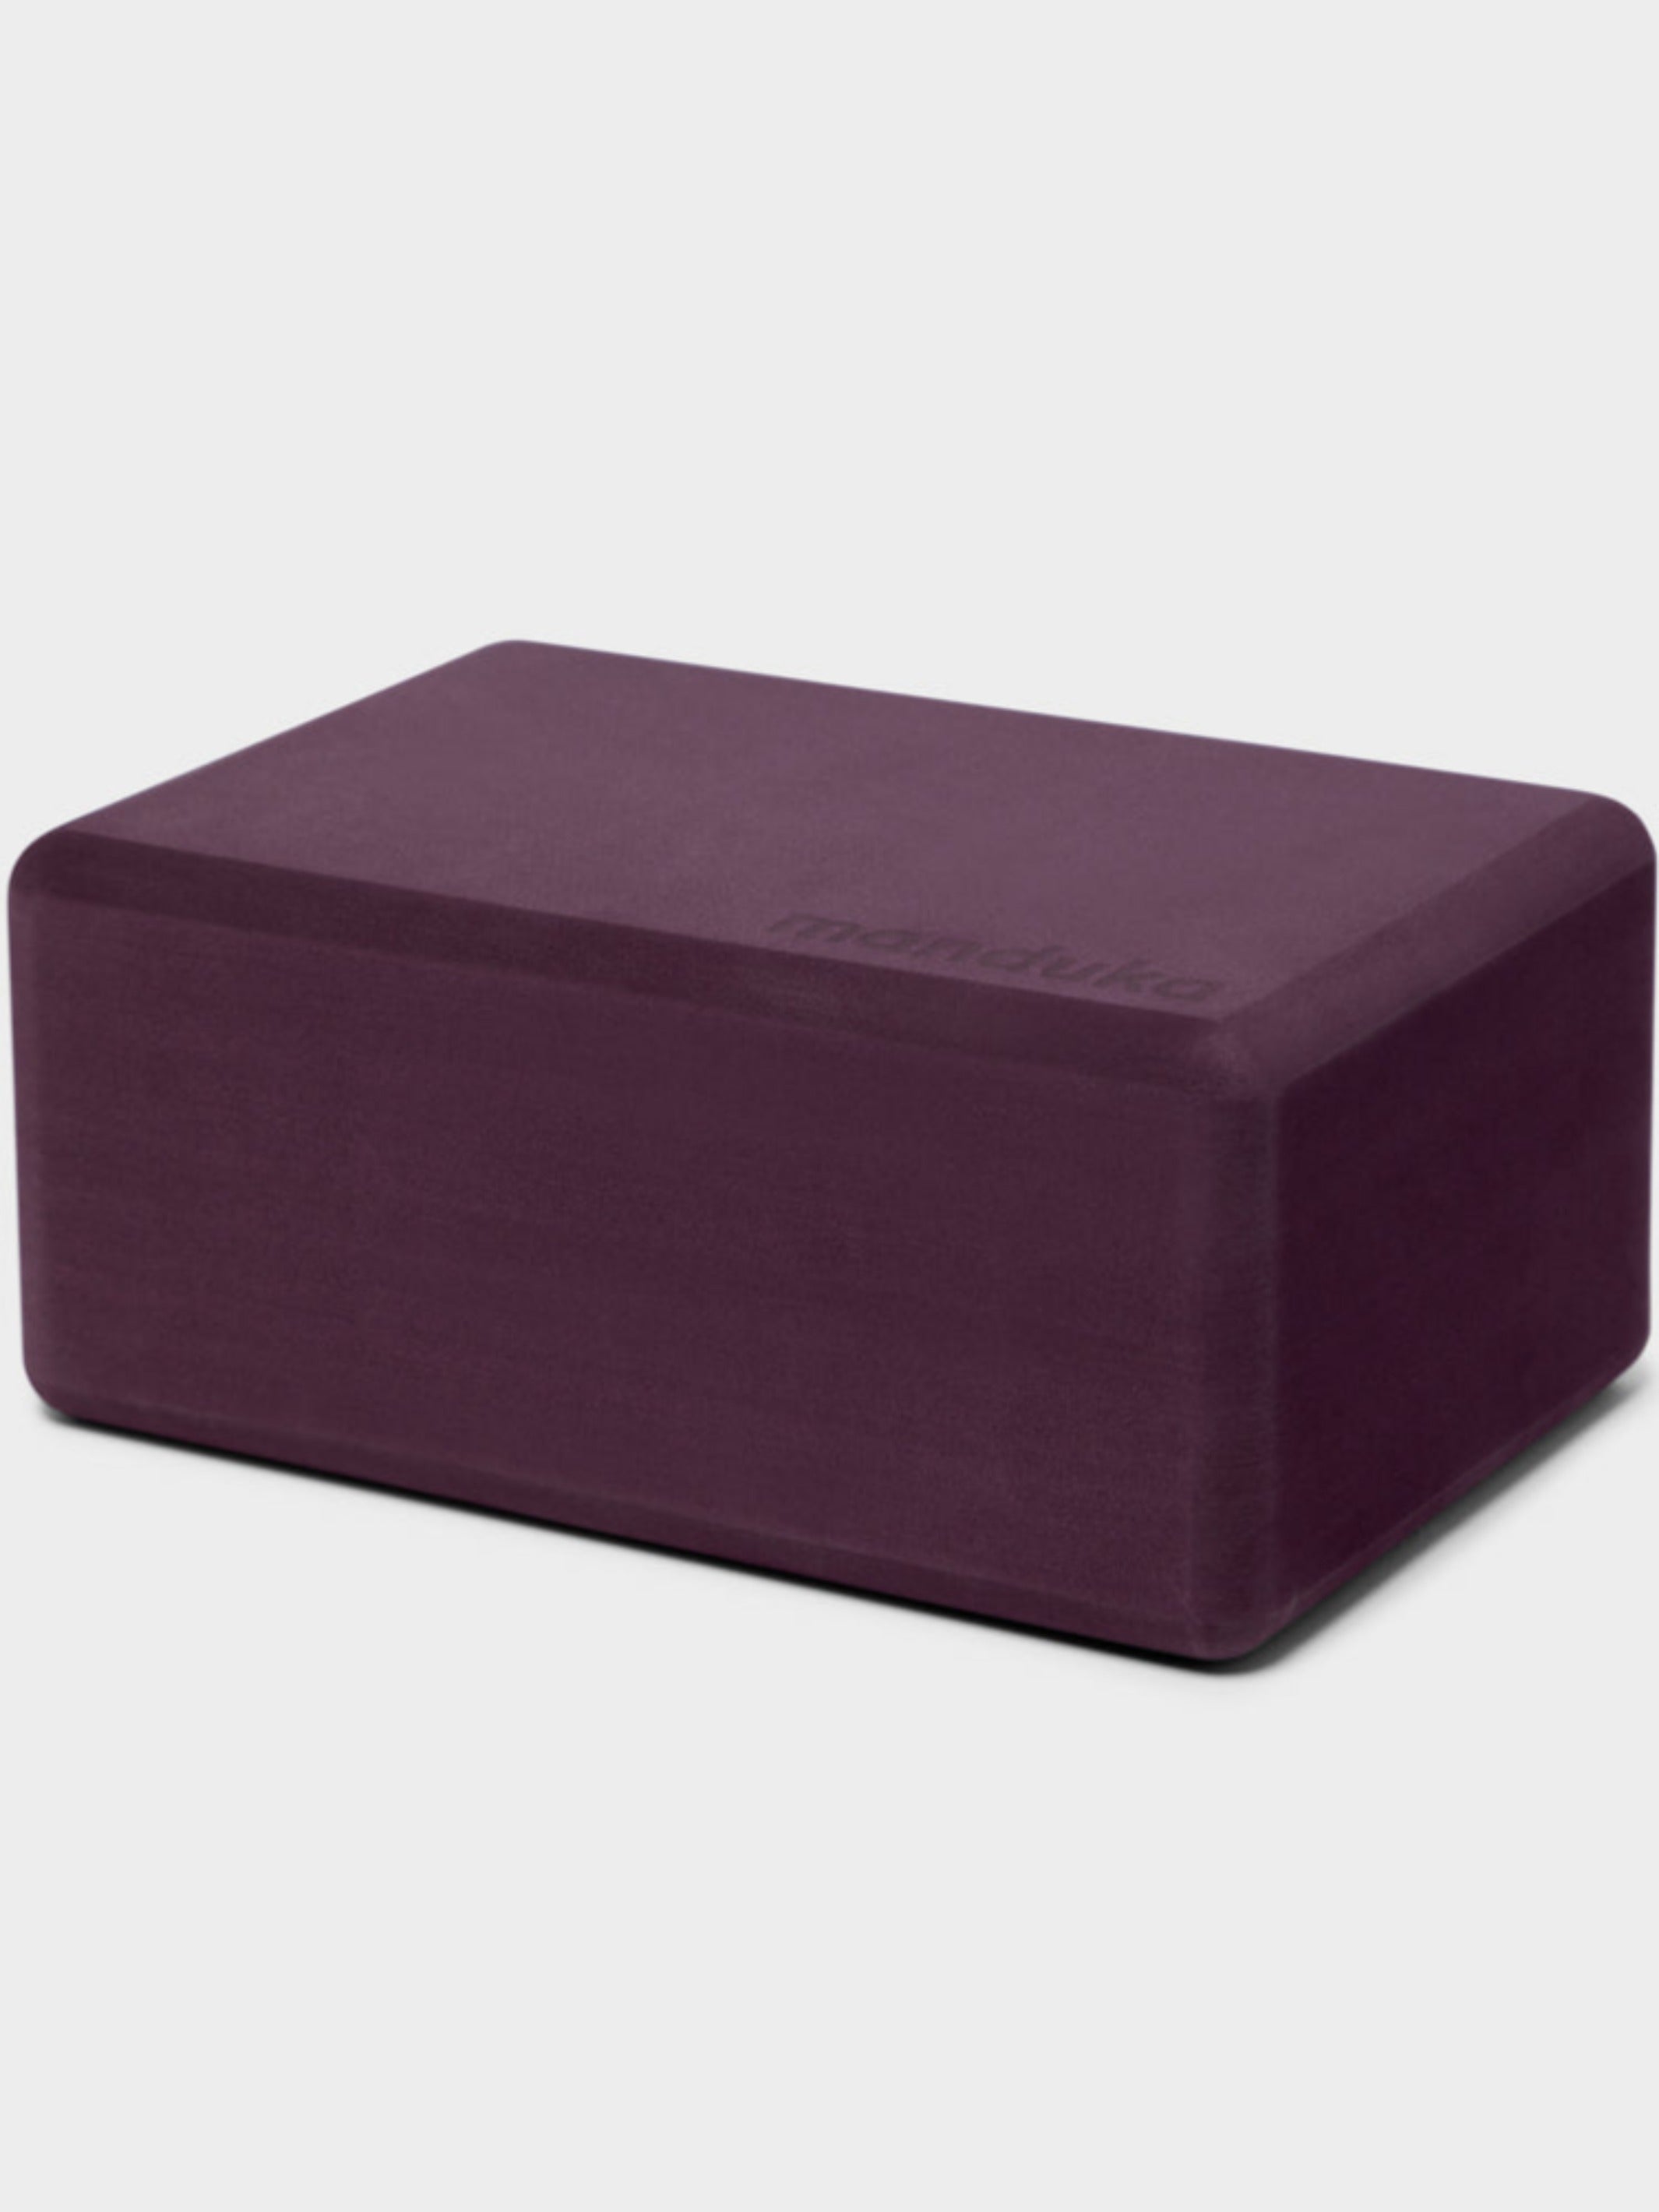 Manduka - 4 Recycled Foam Block - Paisley Purple